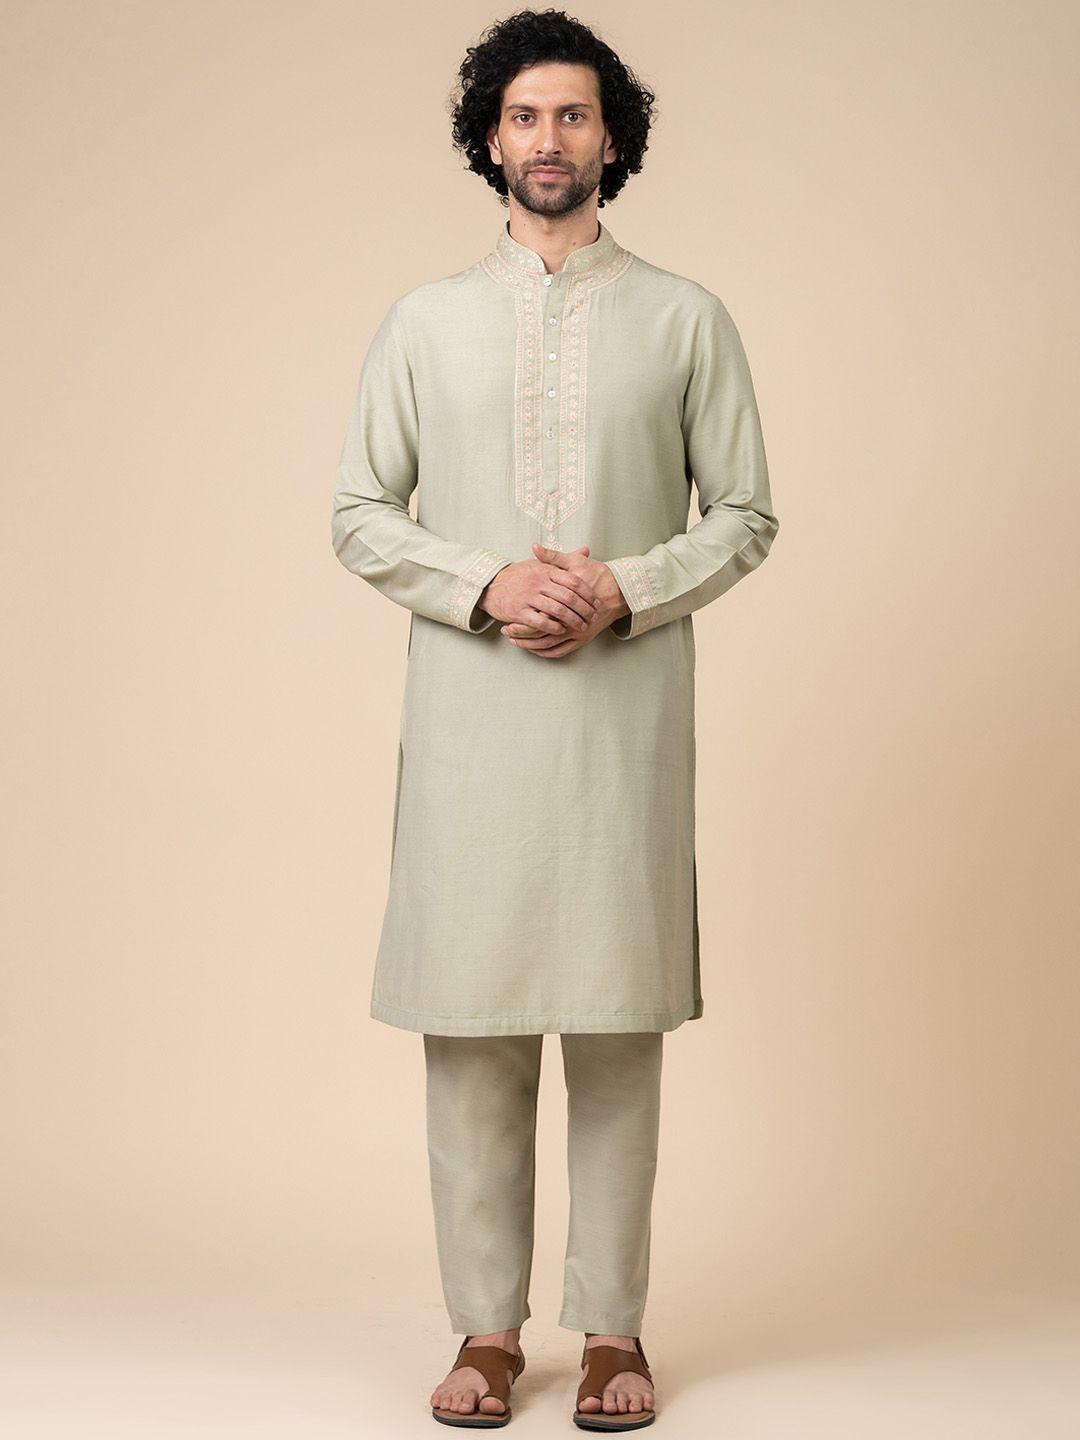 tasva thread work mandarin collat kurta with trousers